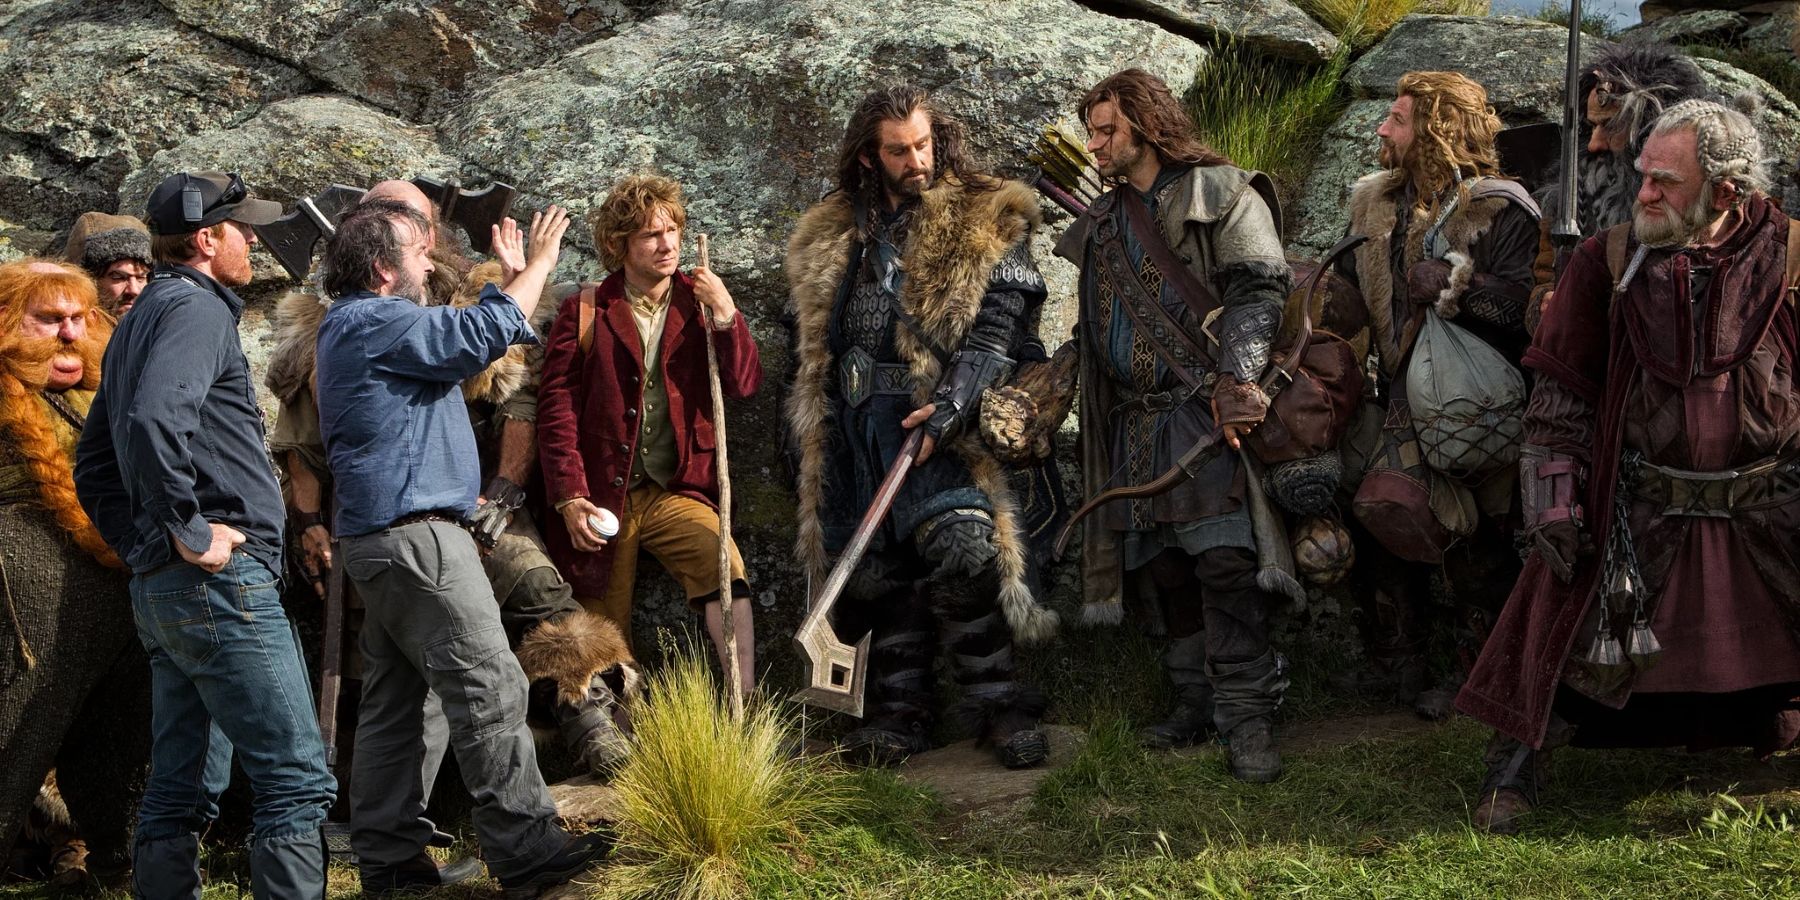 Behind the scenes of The Hobbit